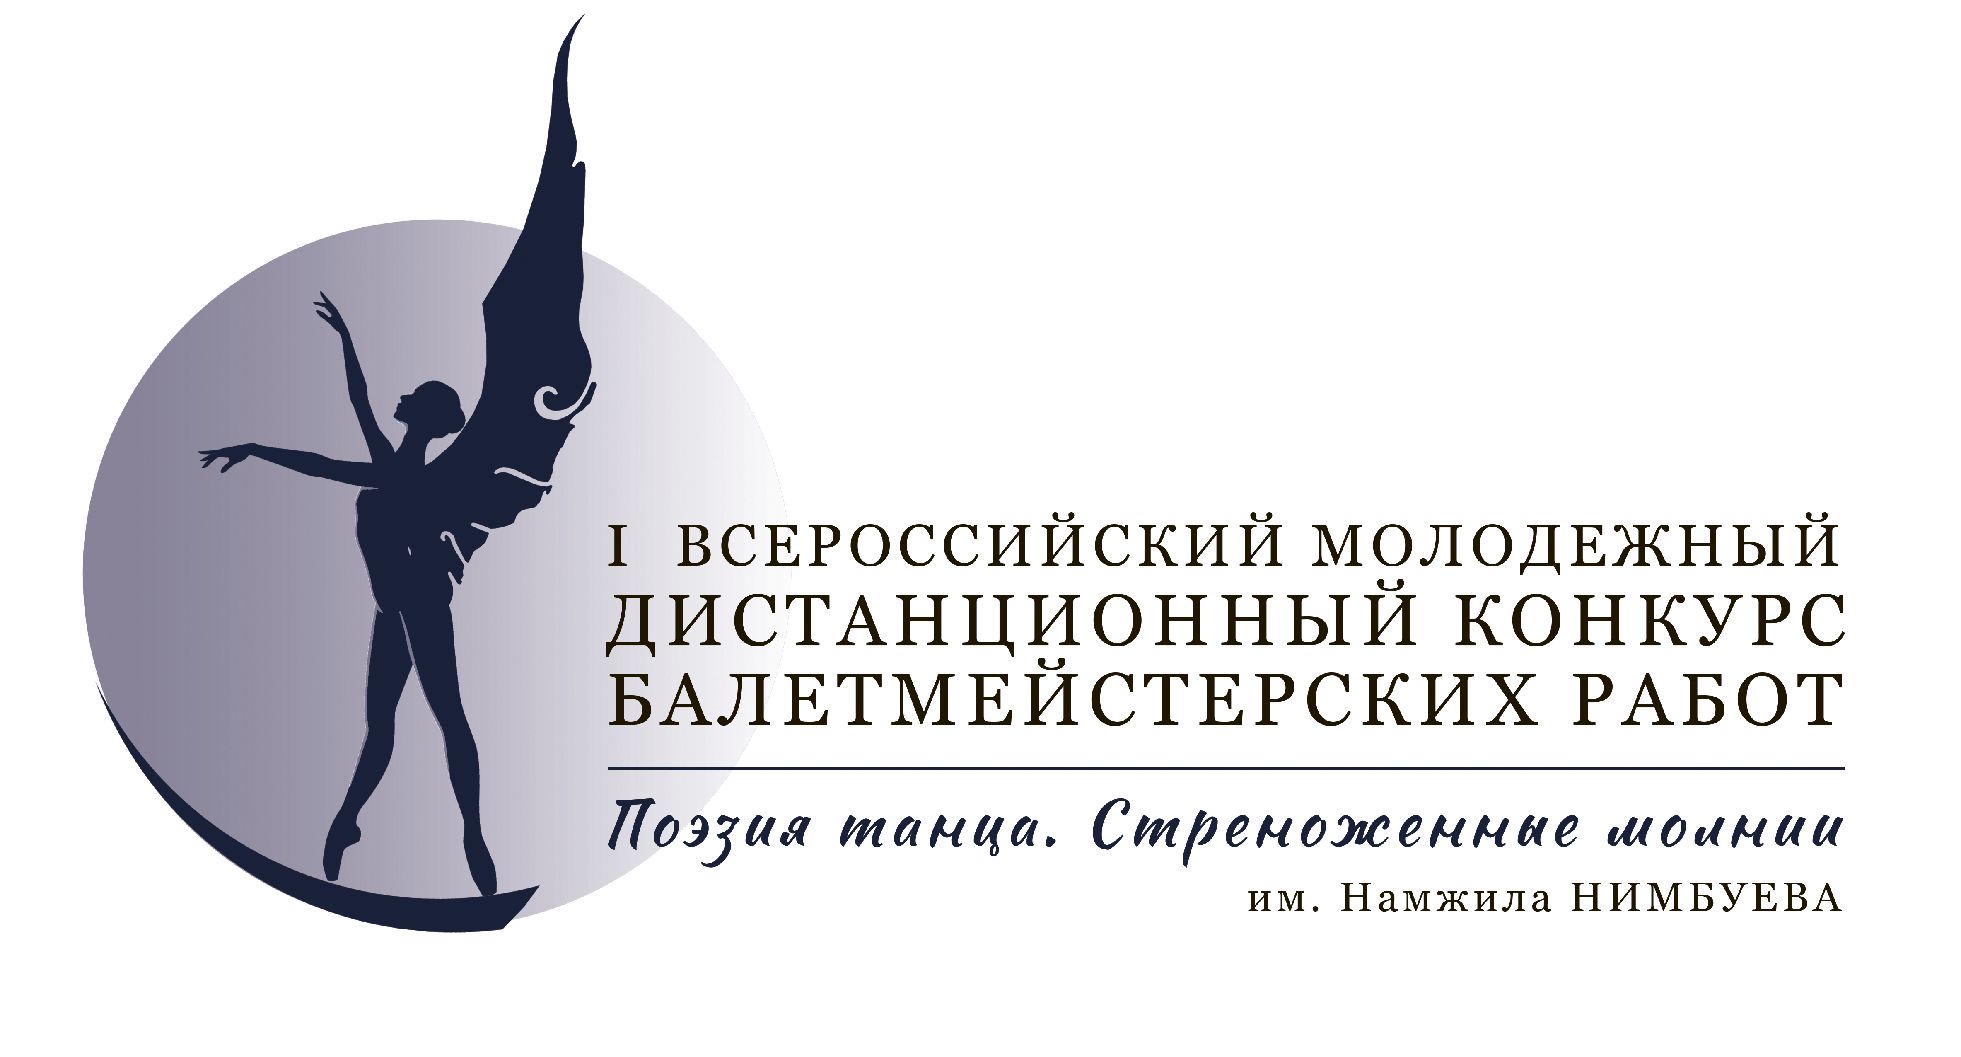 Продлён срок приёма заявок на участие в I Всероссийском молодёжном дистанционном конкурсе балетмейстерских работ 